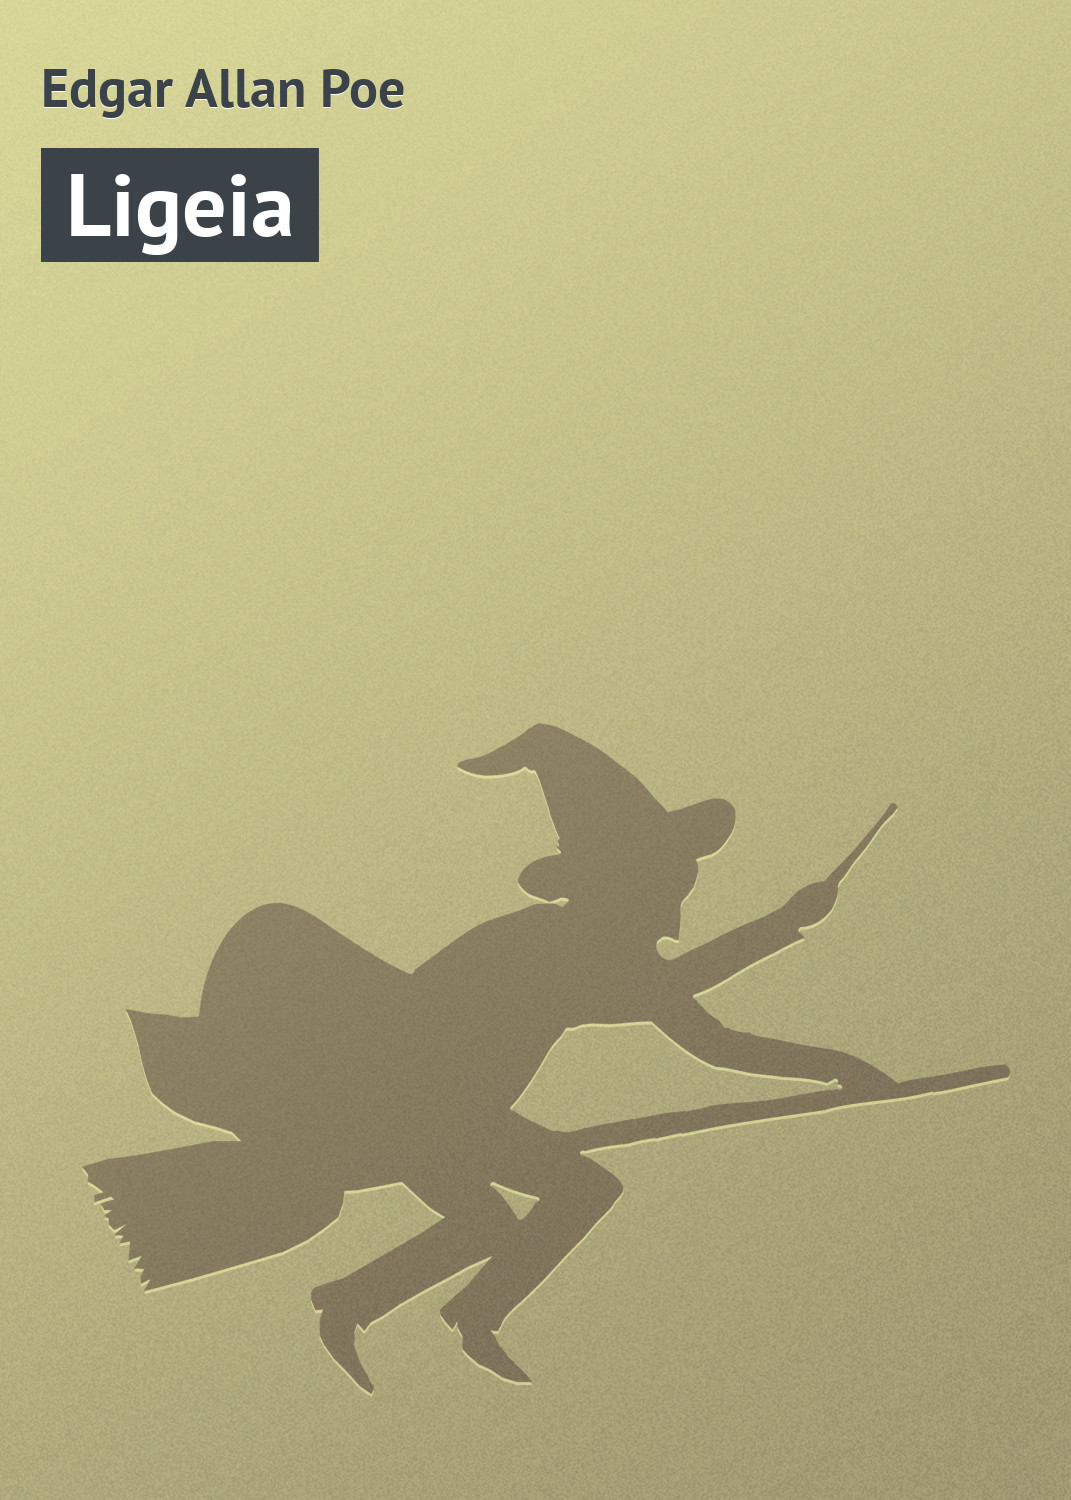 Книга Ligeia из серии , созданная Edgar Poe, может относится к жанру Зарубежная классика, Классическая проза, Ужасы и Мистика. Стоимость электронной книги Ligeia с идентификатором 7592975 составляет 29.95 руб.